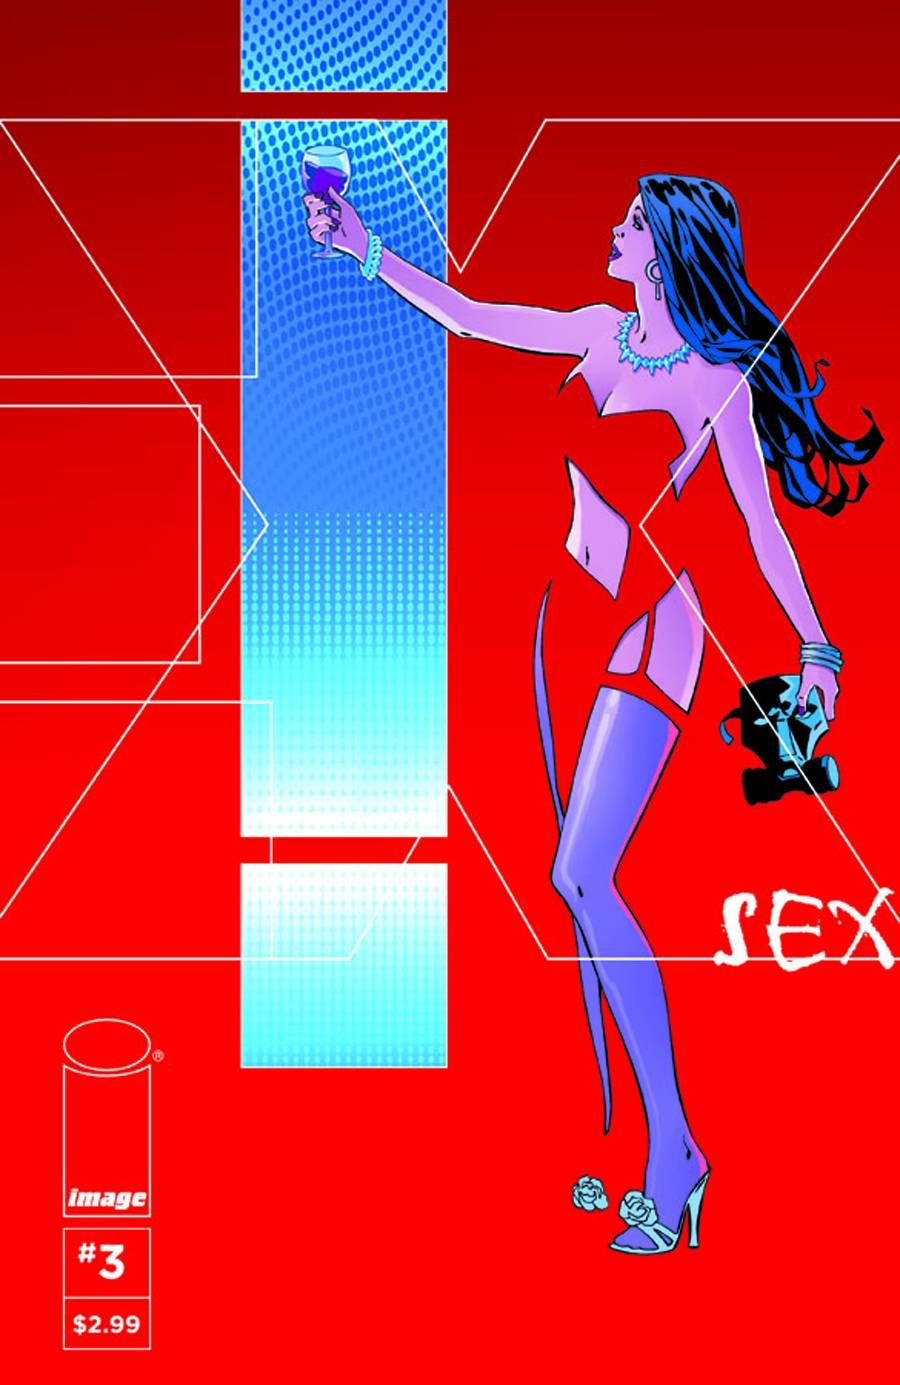 Sex #3 Comic